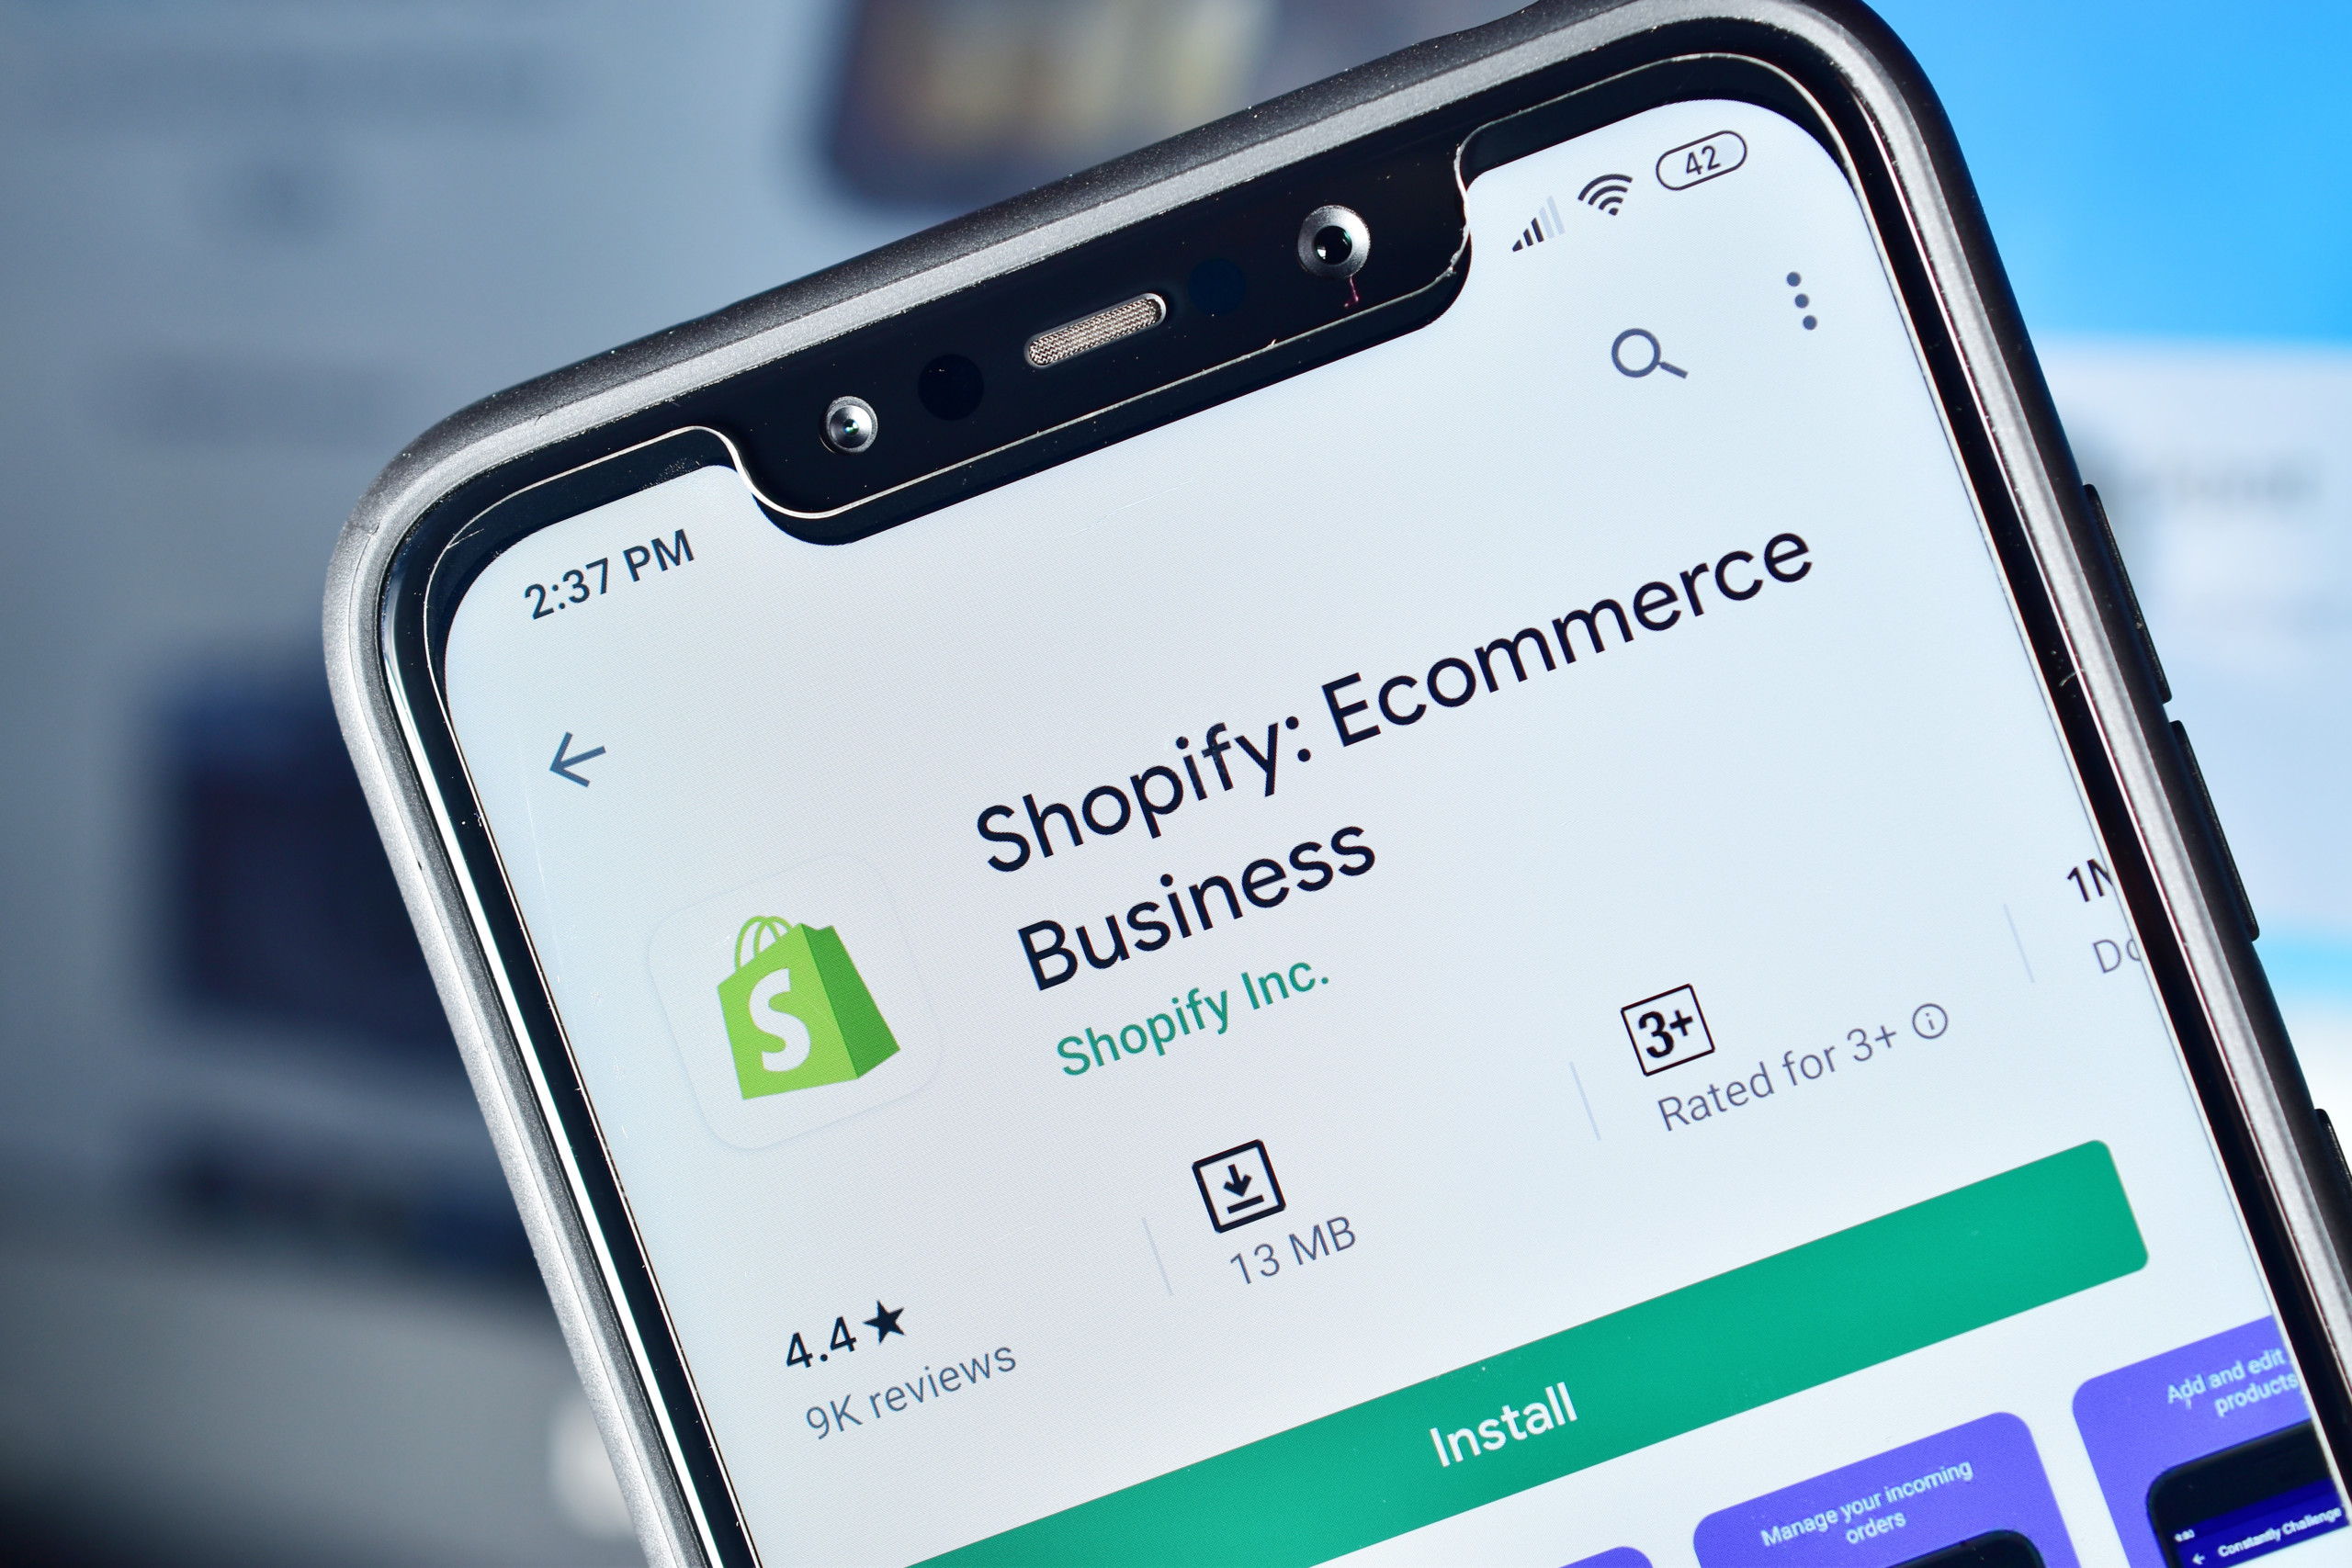 Shopify-Händler können nun Zahlungen in über 30 Kryptowährungen akzeptieren